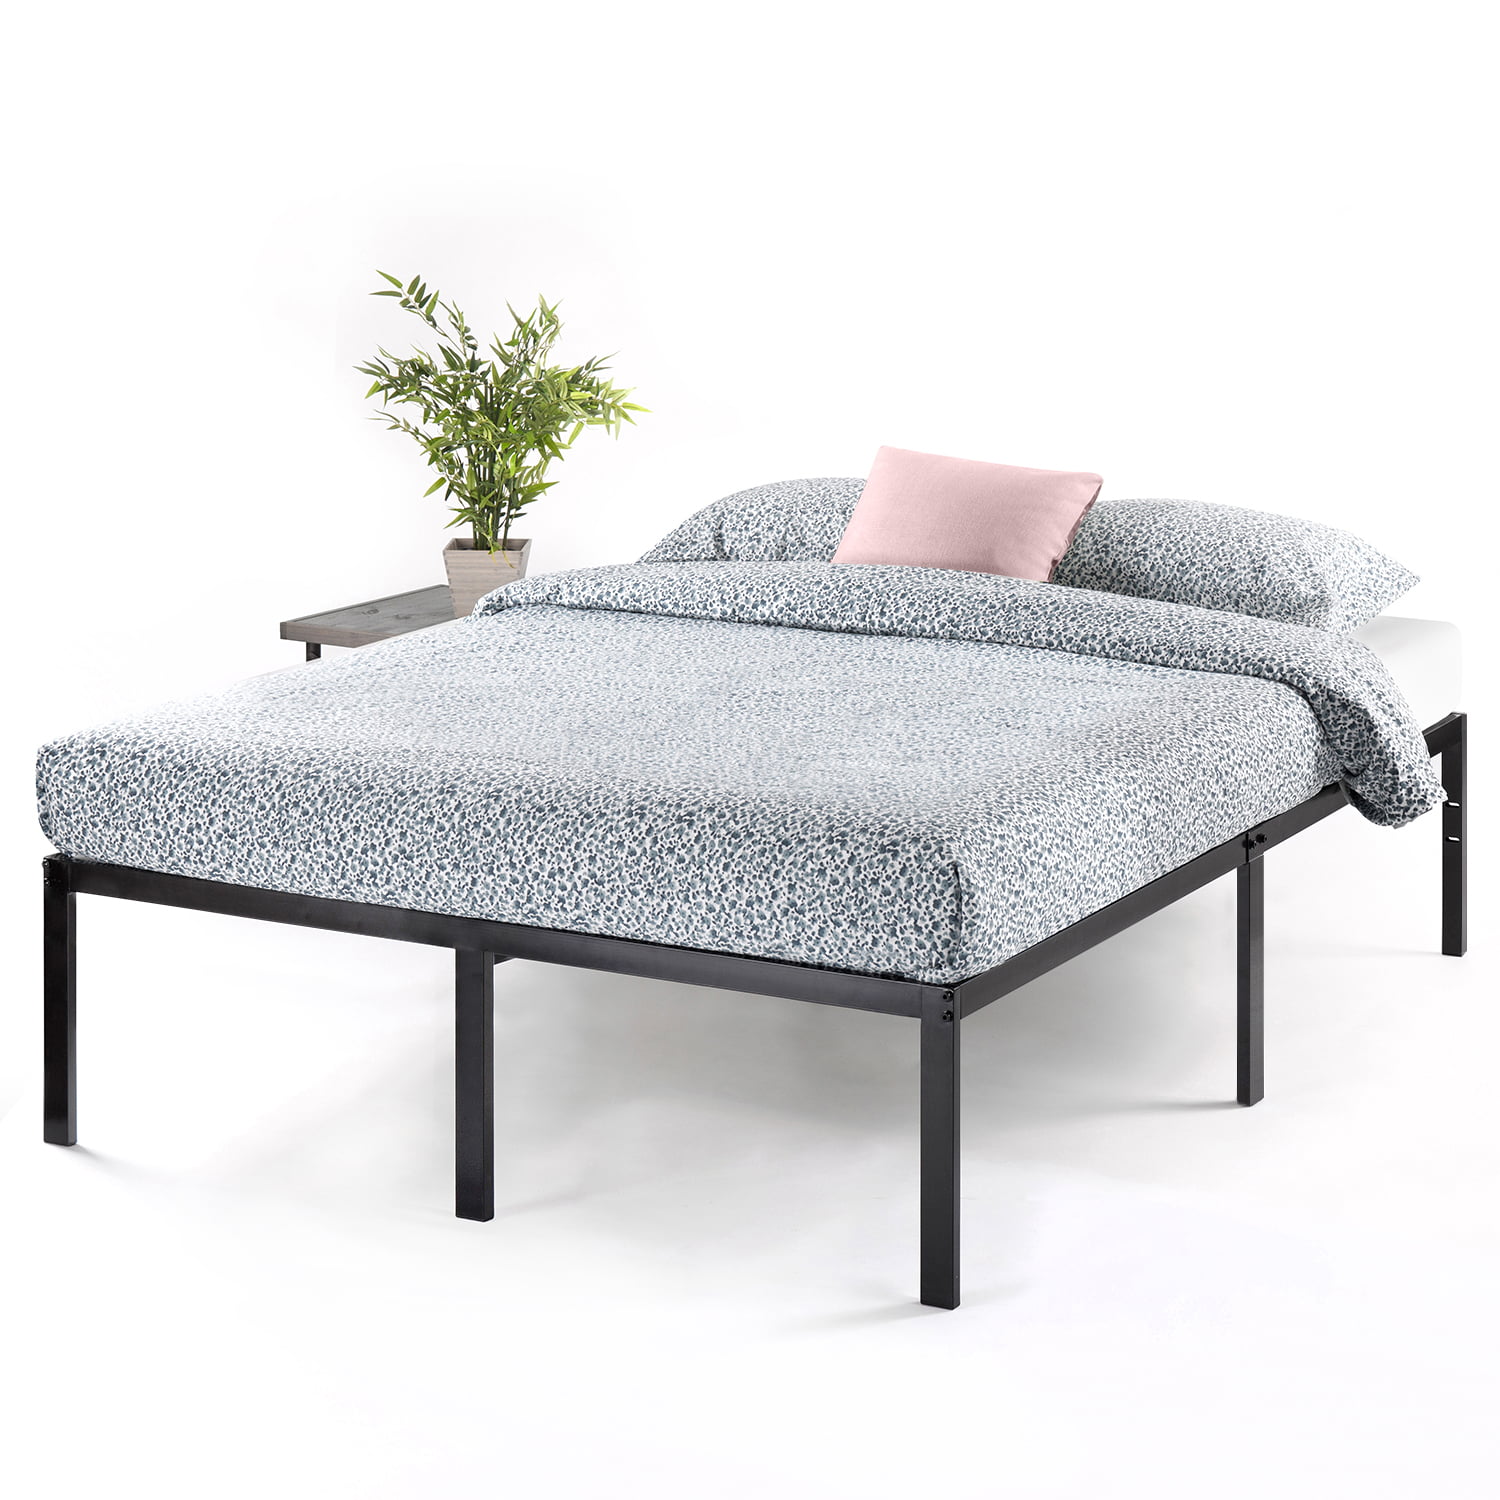 Metal Platform Bed Frame With Steel Slat Support Bedding Furniture King Size New 